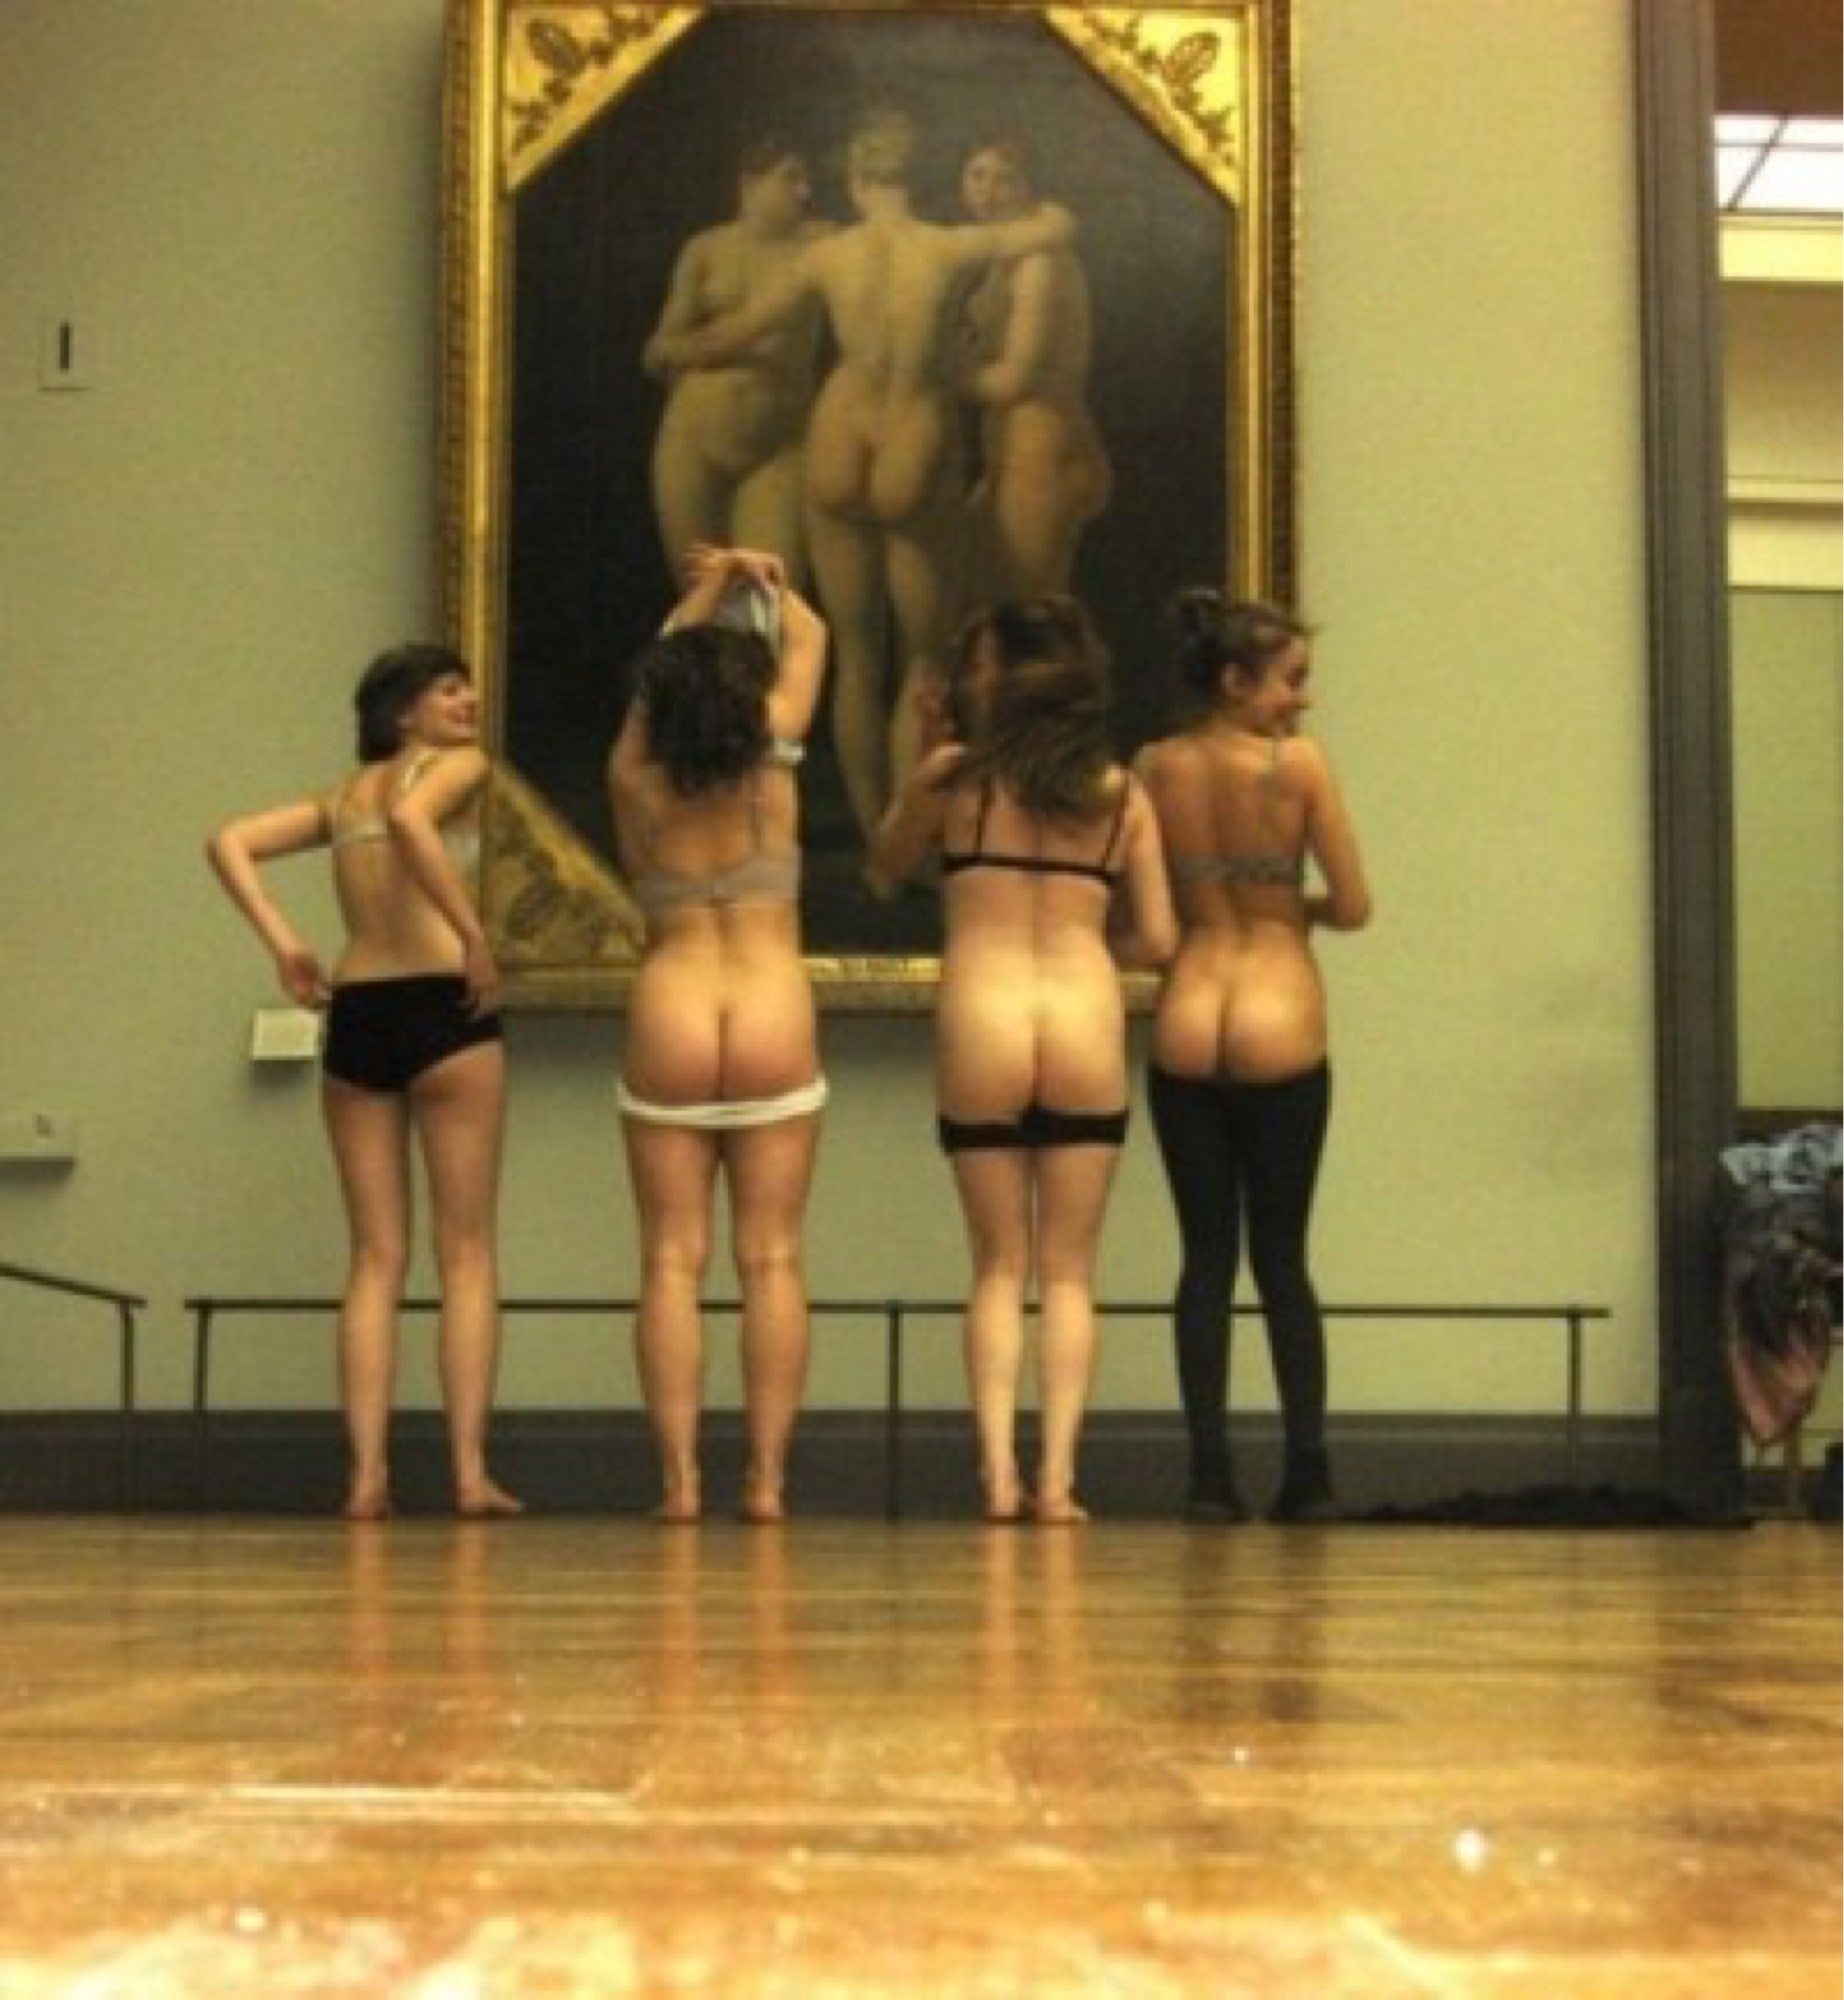 Изображение помечено: Art, Ass - Butt, Museum